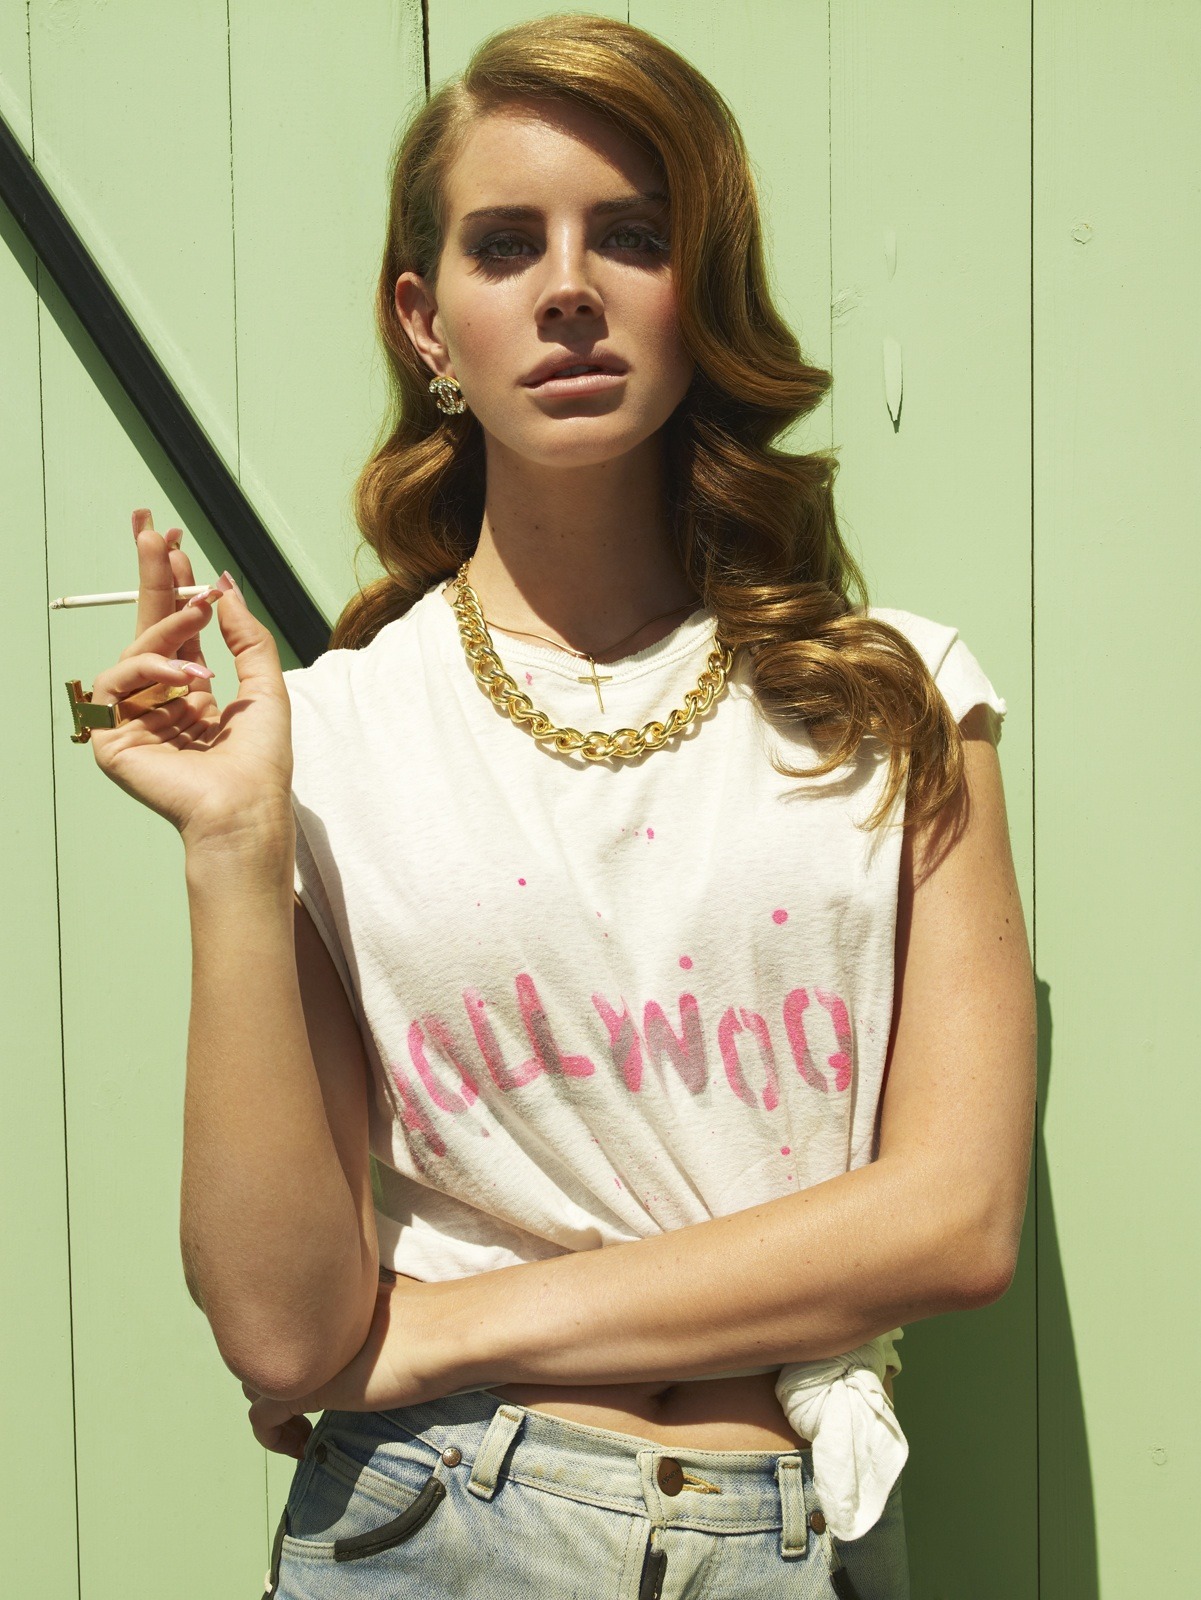 Lana Del Rey by Nicole Nodland